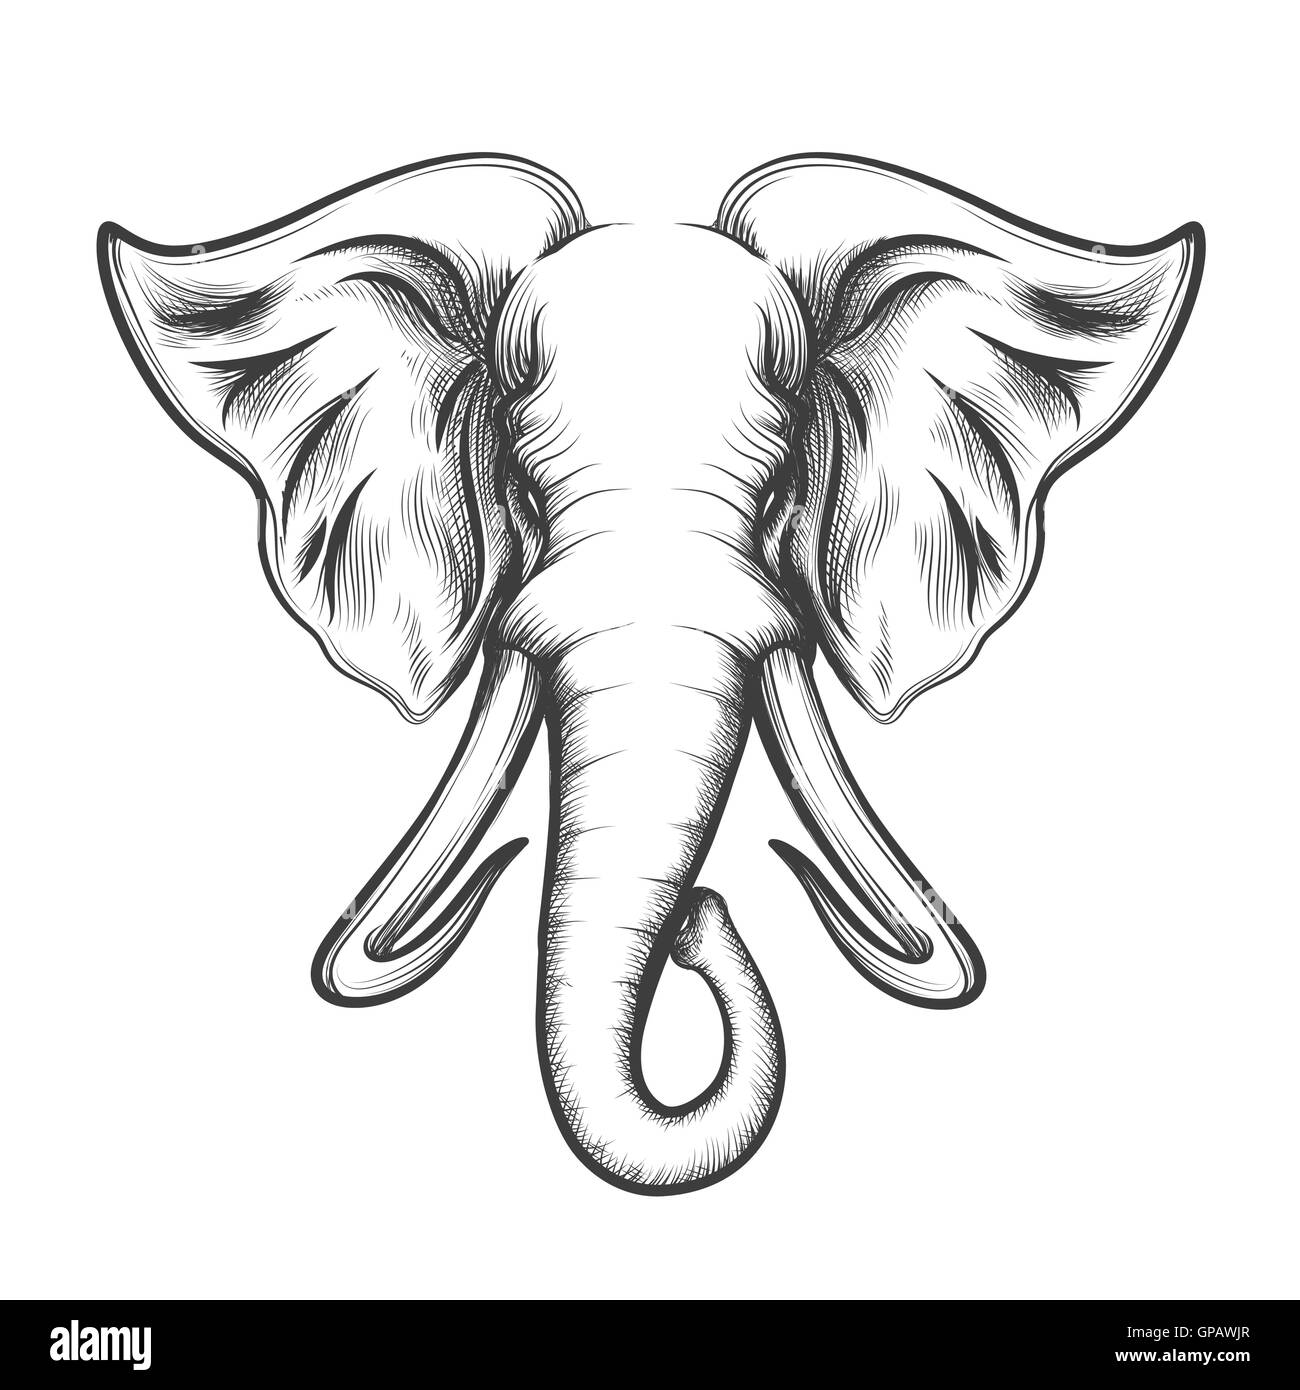 Cabeza de elefante dibujado en estilo retro grabado aislado sobre fondo blanco. Ilustración vectorial. Ilustración del Vector